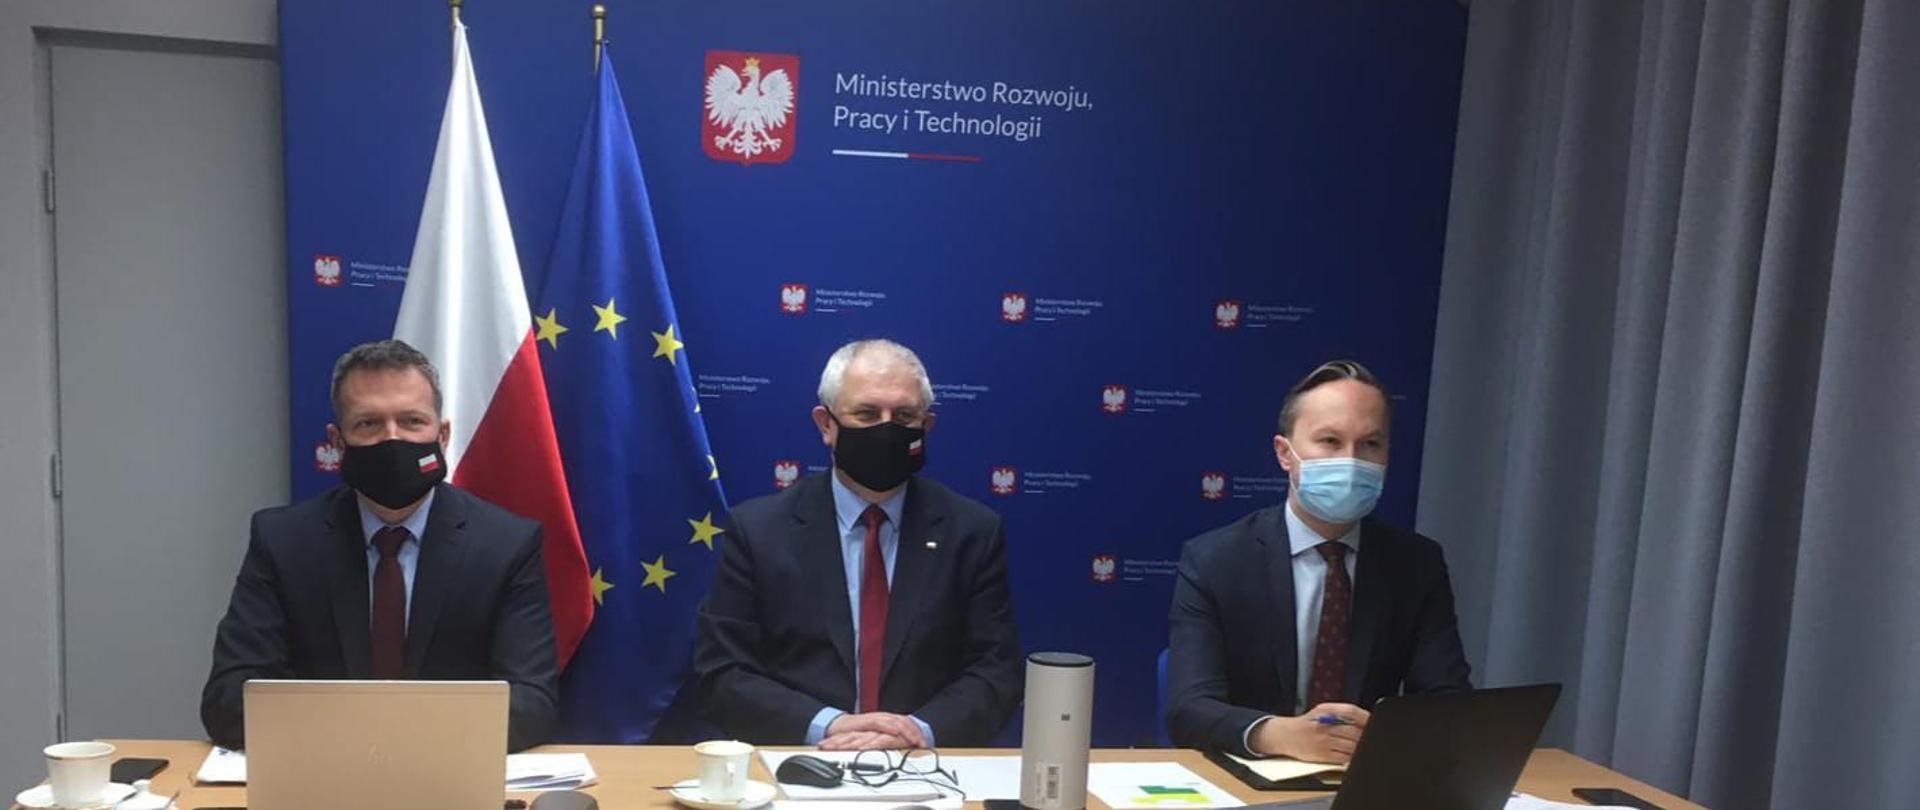 Spotkanie wiceministra Grzegorza Piechowiaka z przedstawicielami Specjalnych Stref Ekonomicznych